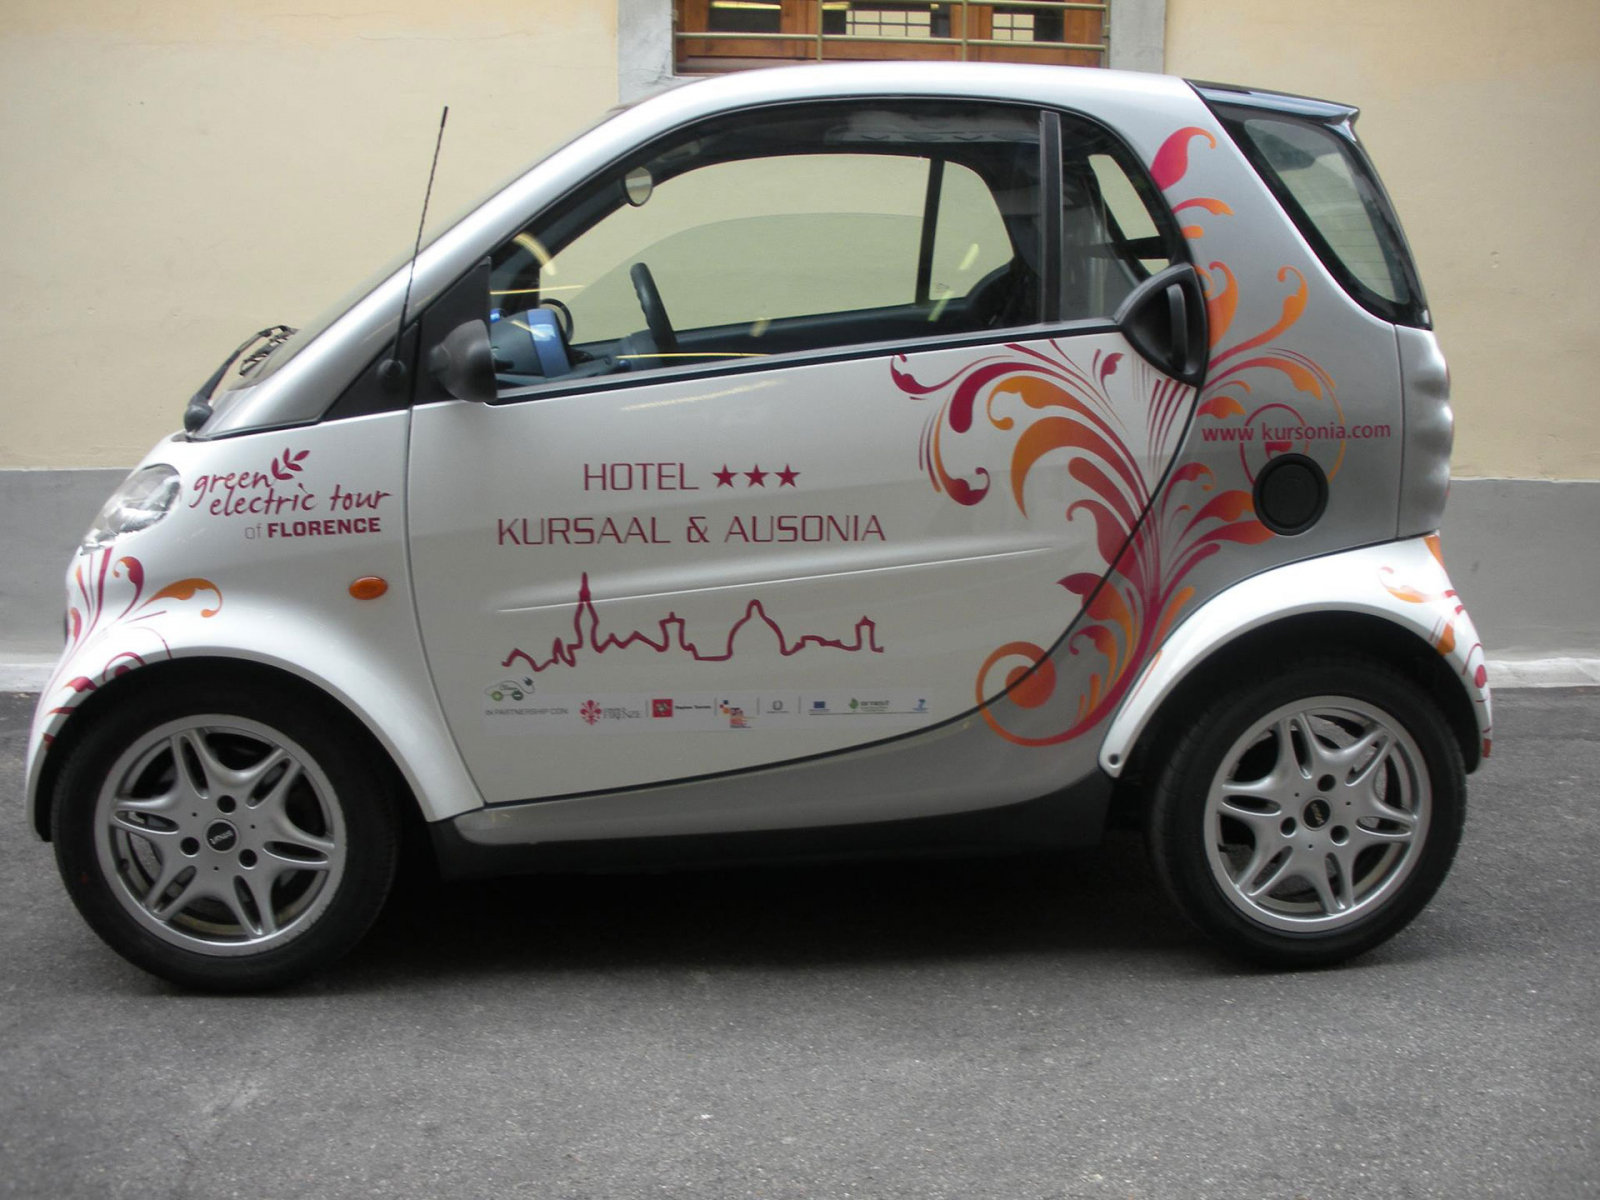 Decorazioni veicoli Firenze, adesivi per auto personalizzati